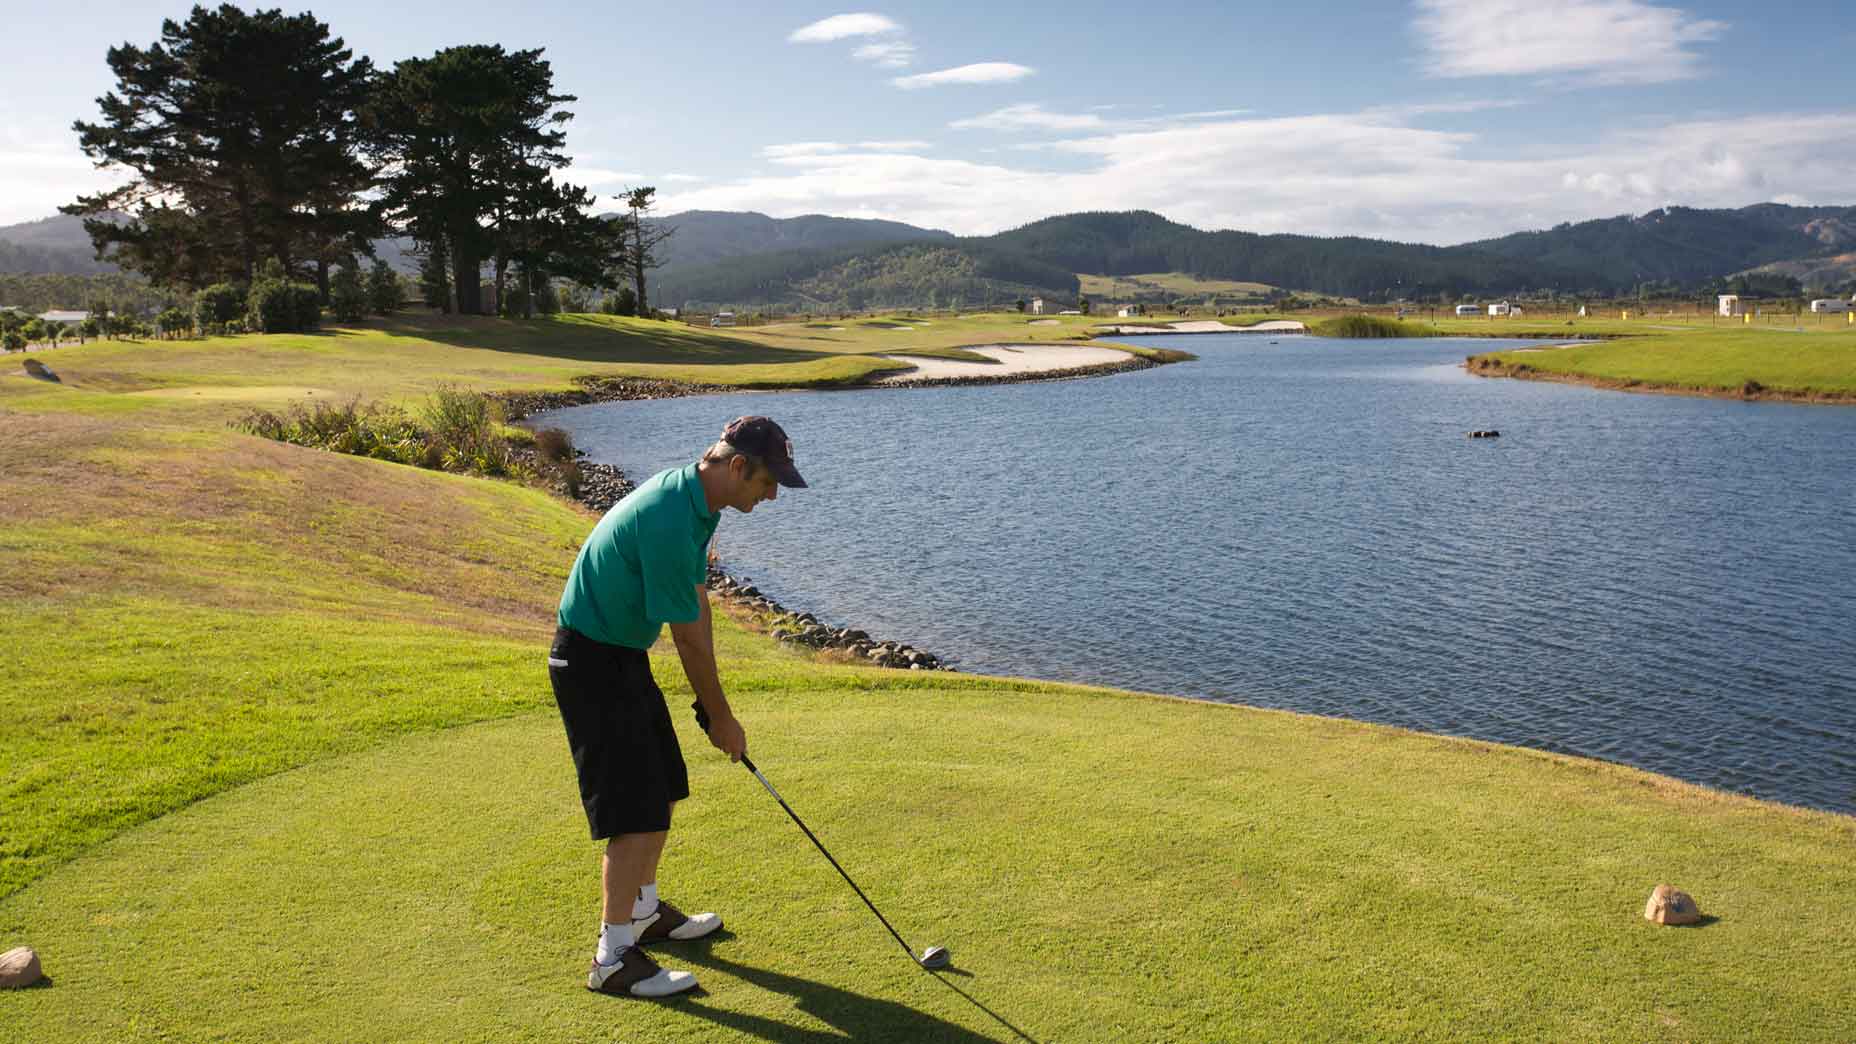 Luật golf: Sợ mất bóng, golfer có được quyền nhận phạt ở tee box và hướng thẳng đến khu drop zone?